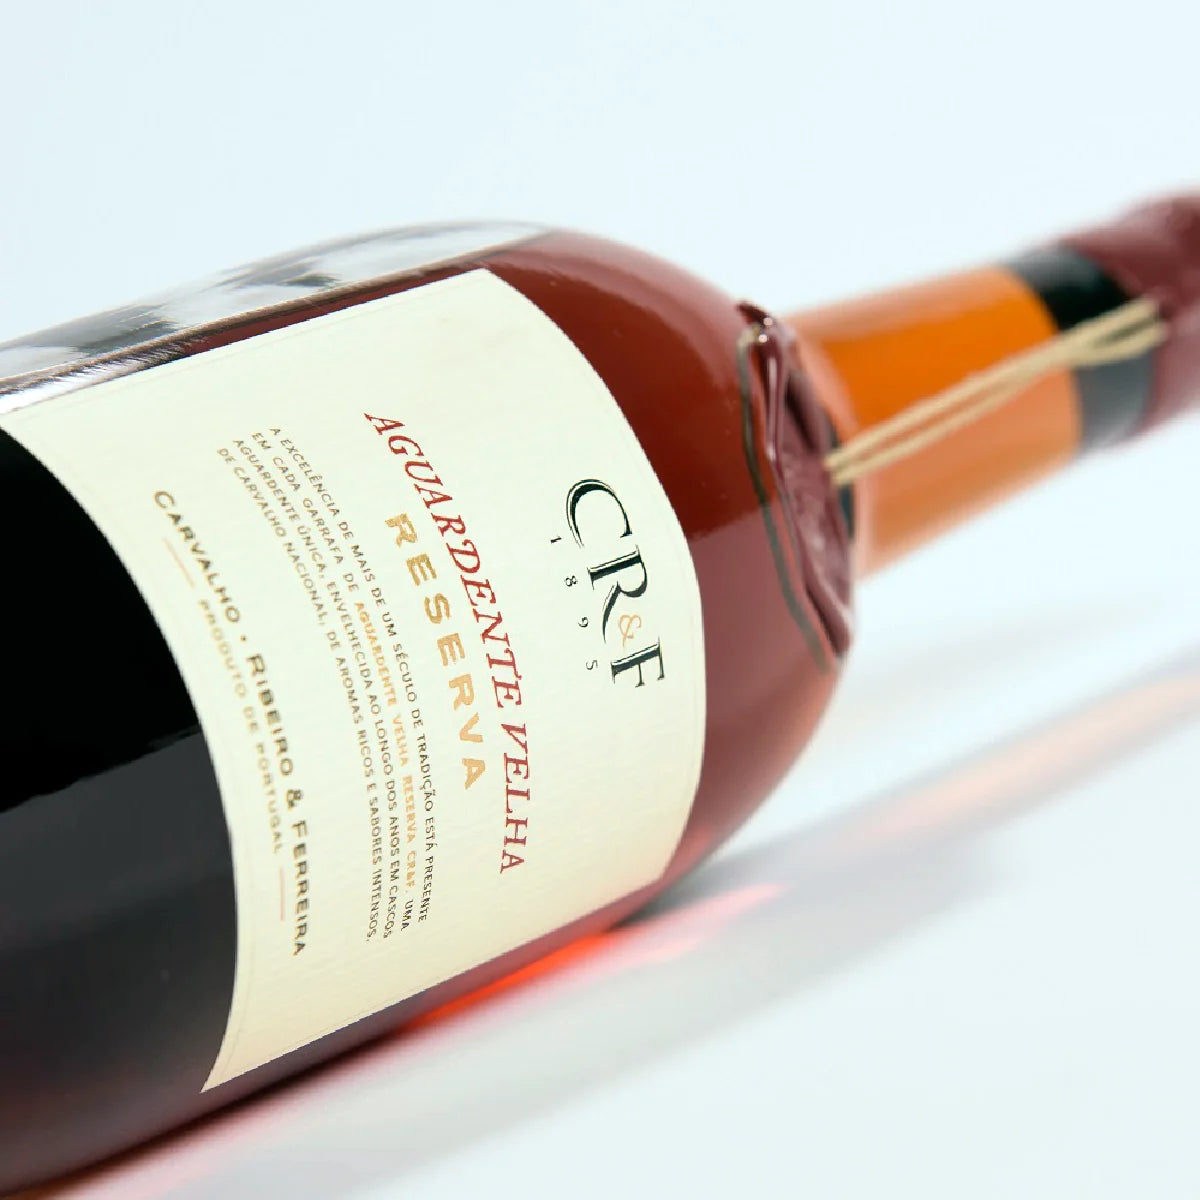 Aguardente vínica velha CRF Reserva + cálice (Ed. Especial)